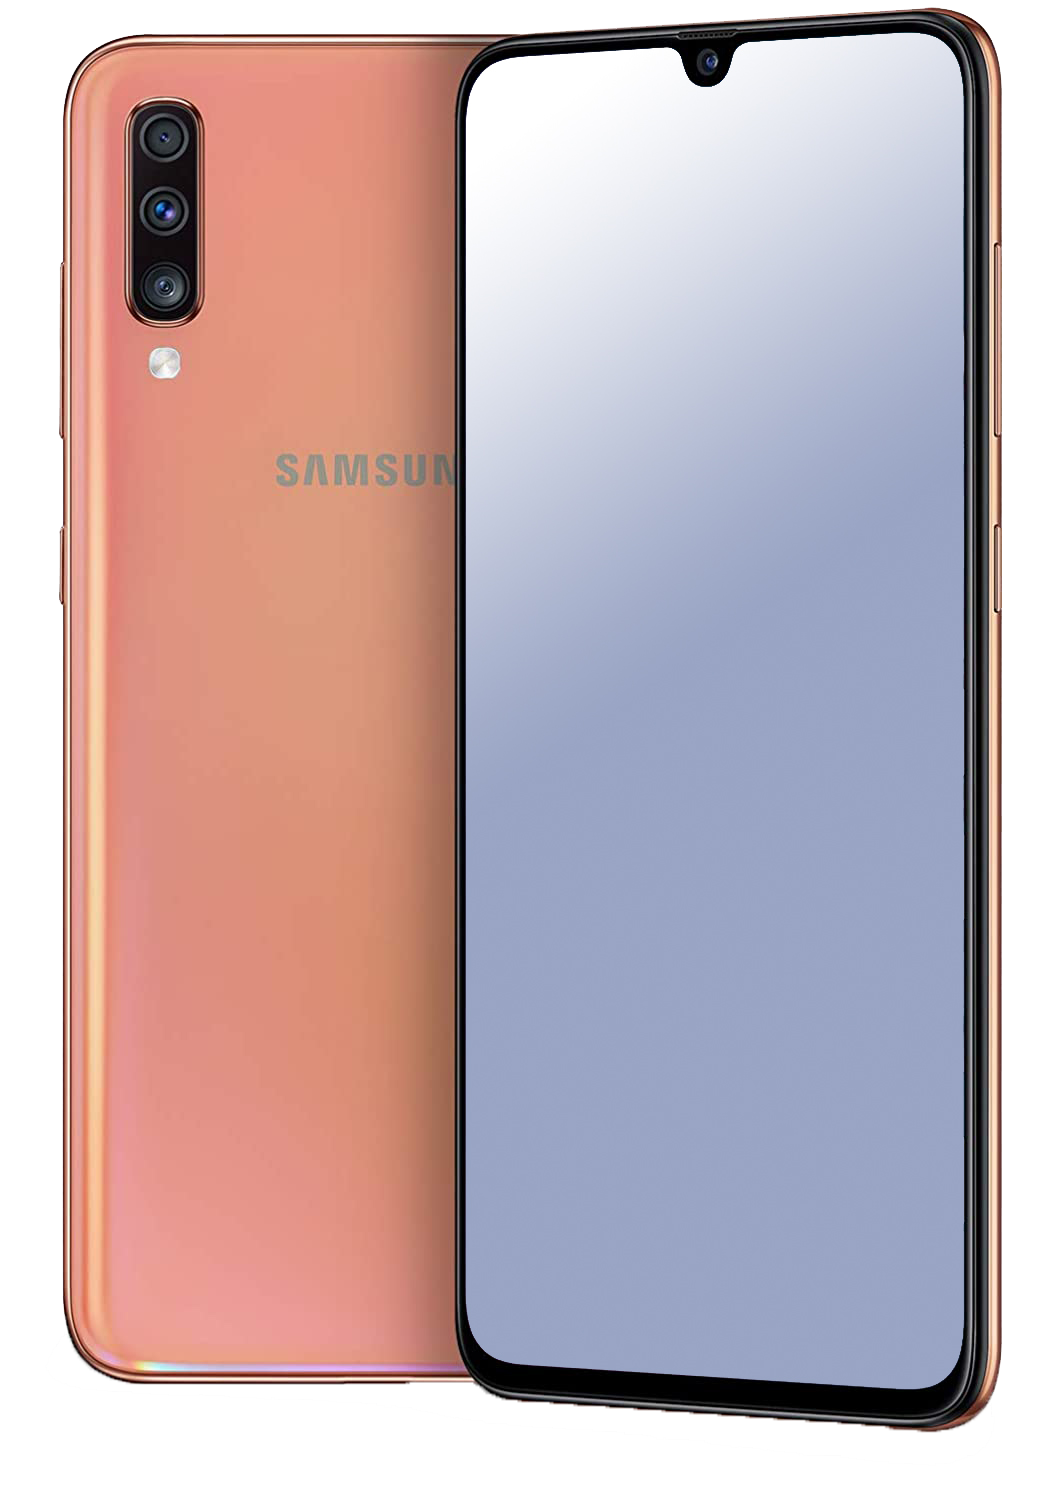 Samsung Galaxy A70 Dual-SIM orange - Ohne Vertrag